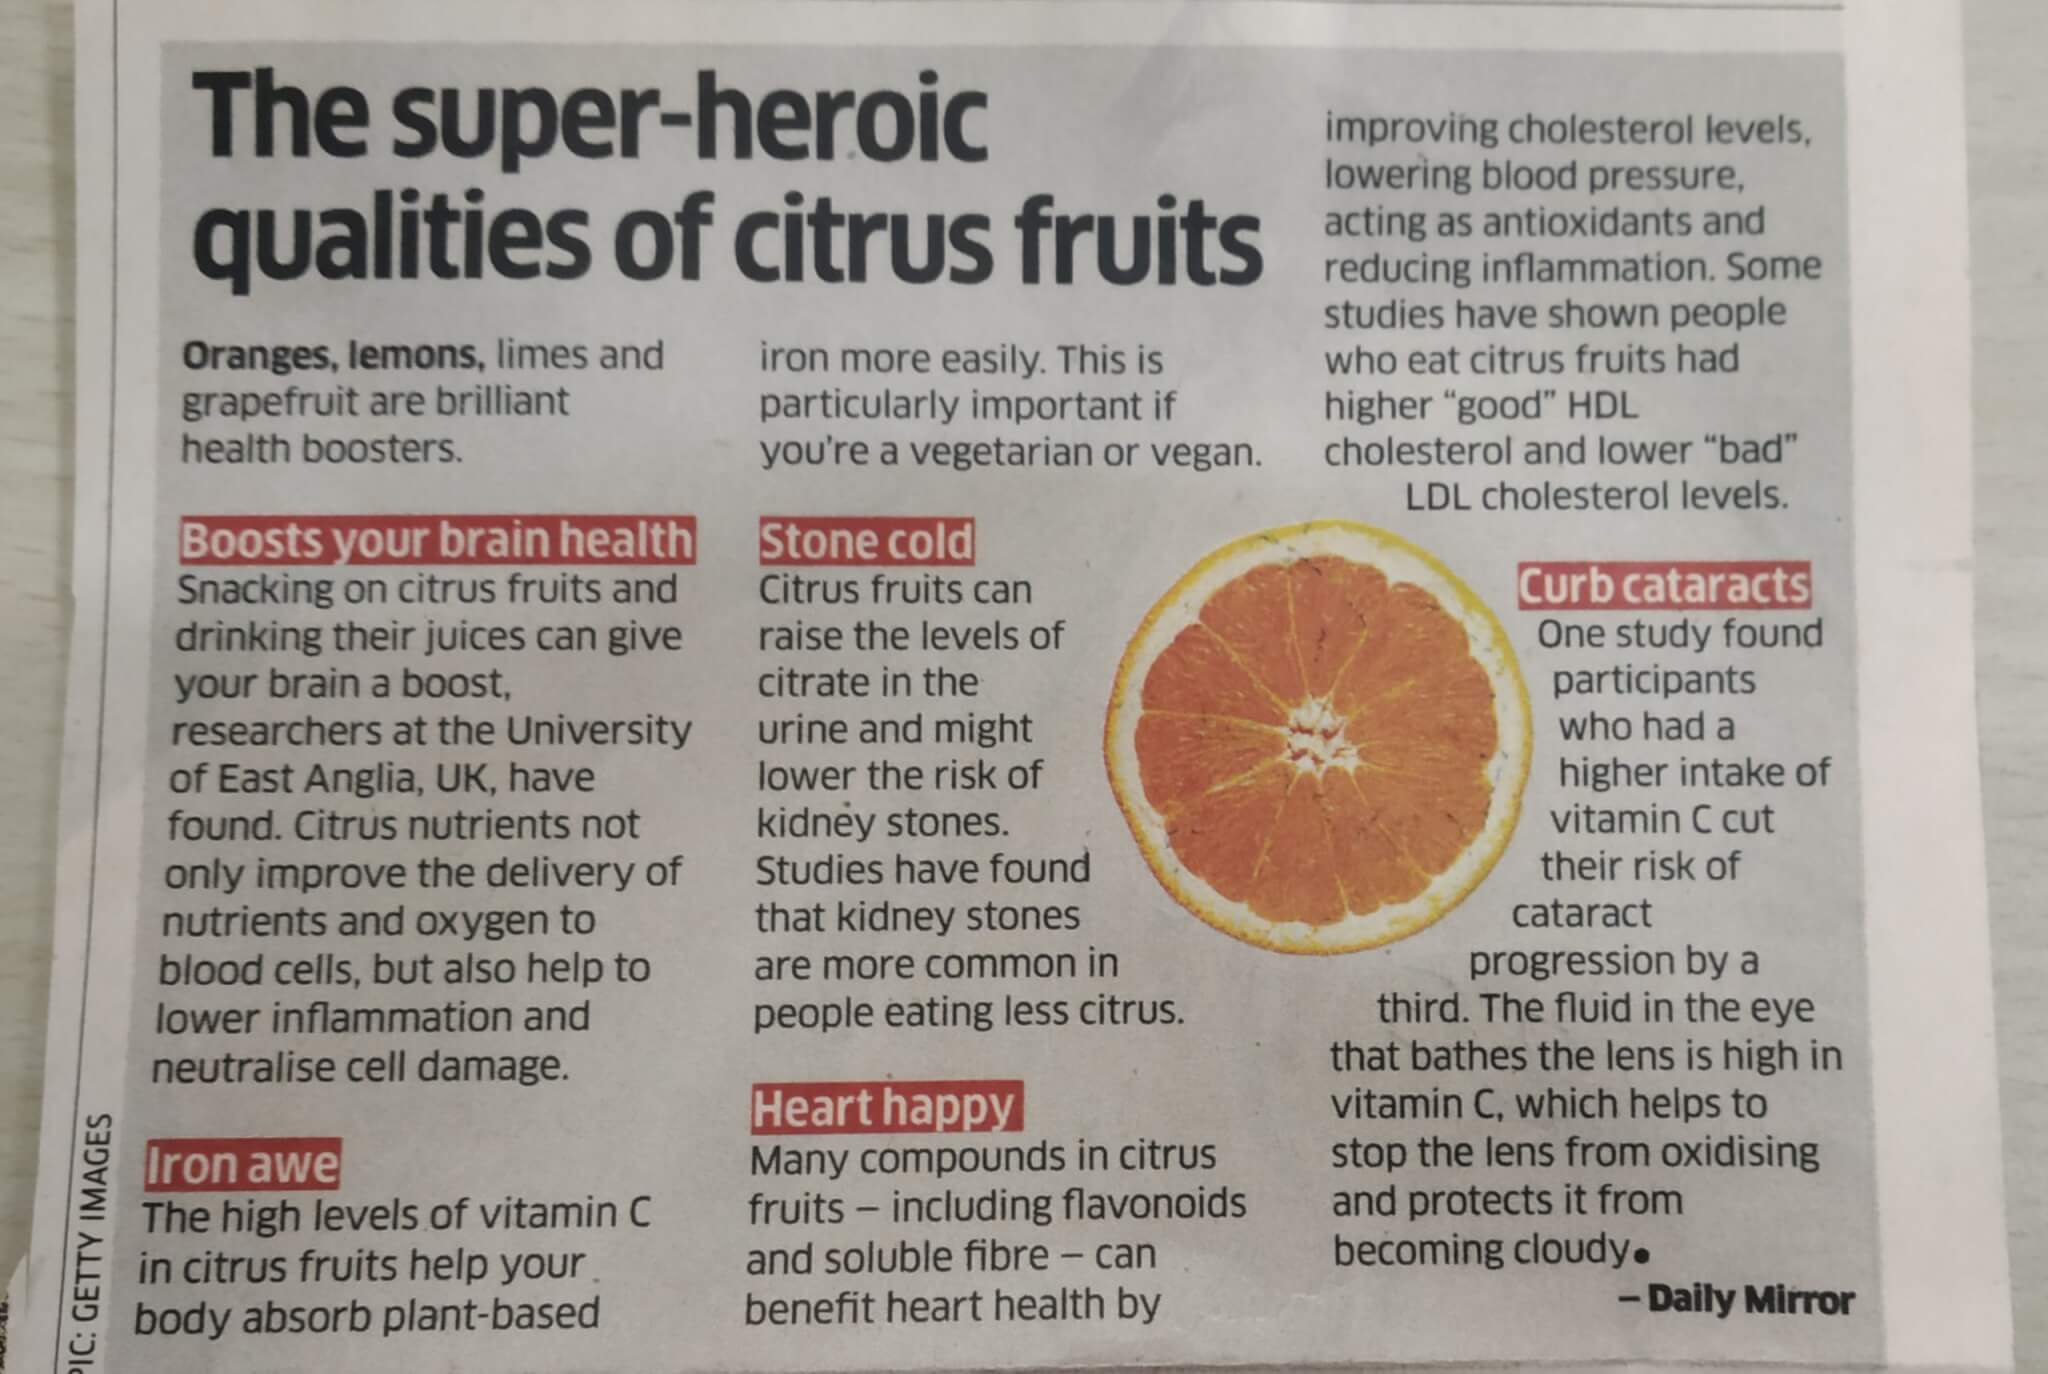 The Super Heroic qualities of Citrus Fruit